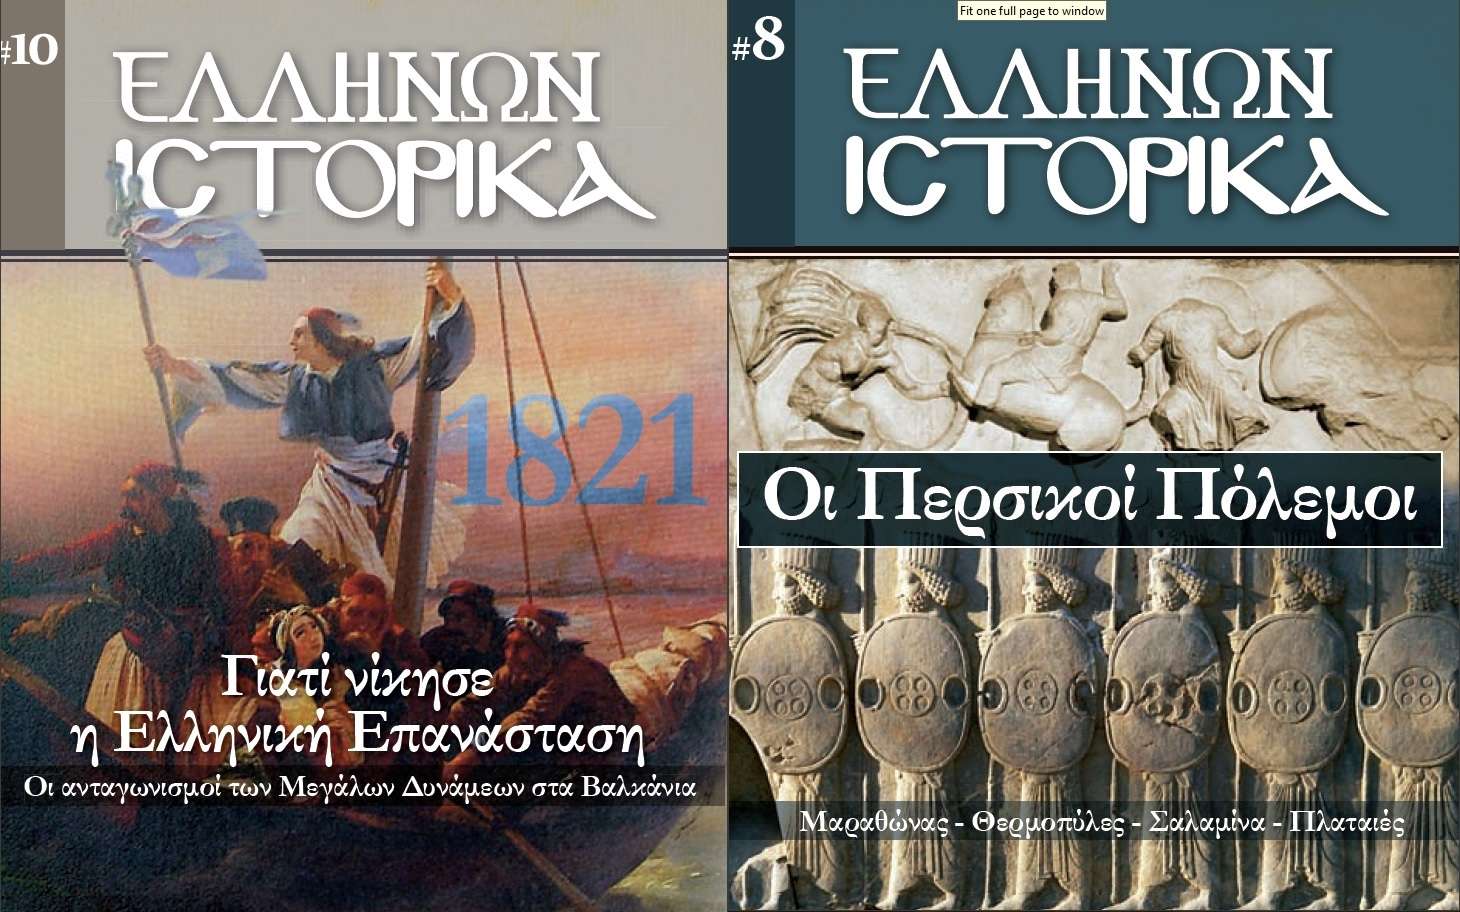 Κατεβάστε δωρεάν 15 τεύχη ‘Ελλήνων Ιστορικά’ (του Τύπου της Κυριακής) (pdf)